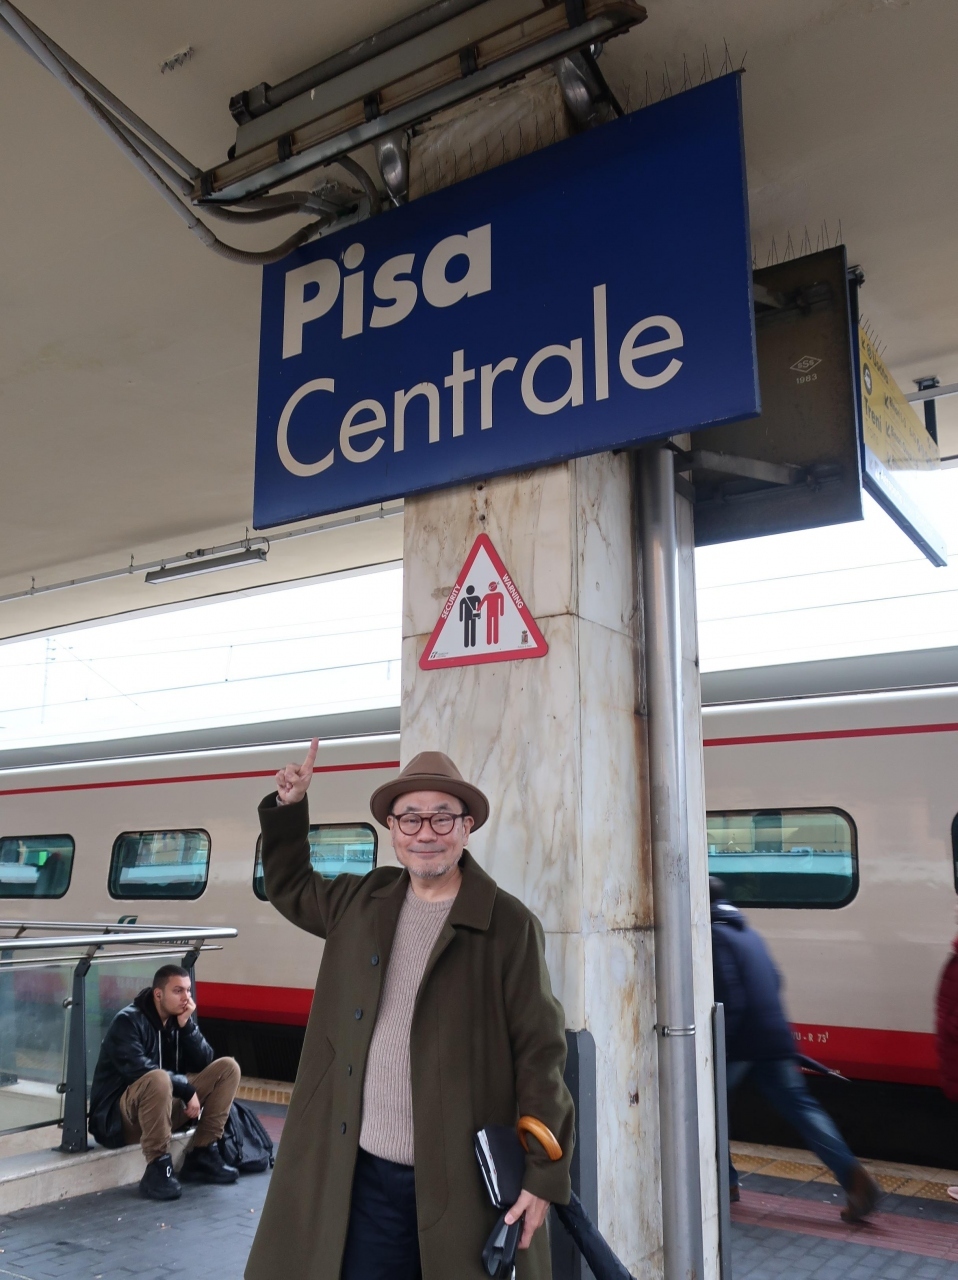 ピサ・セントラーレには定刻は9:53でしたが
ちょっと遅れて10時過ぎに到着です。

駅前のバスに乗ってピサの斜塔のある
ピサのドゥオーモ広場へ向かいます。